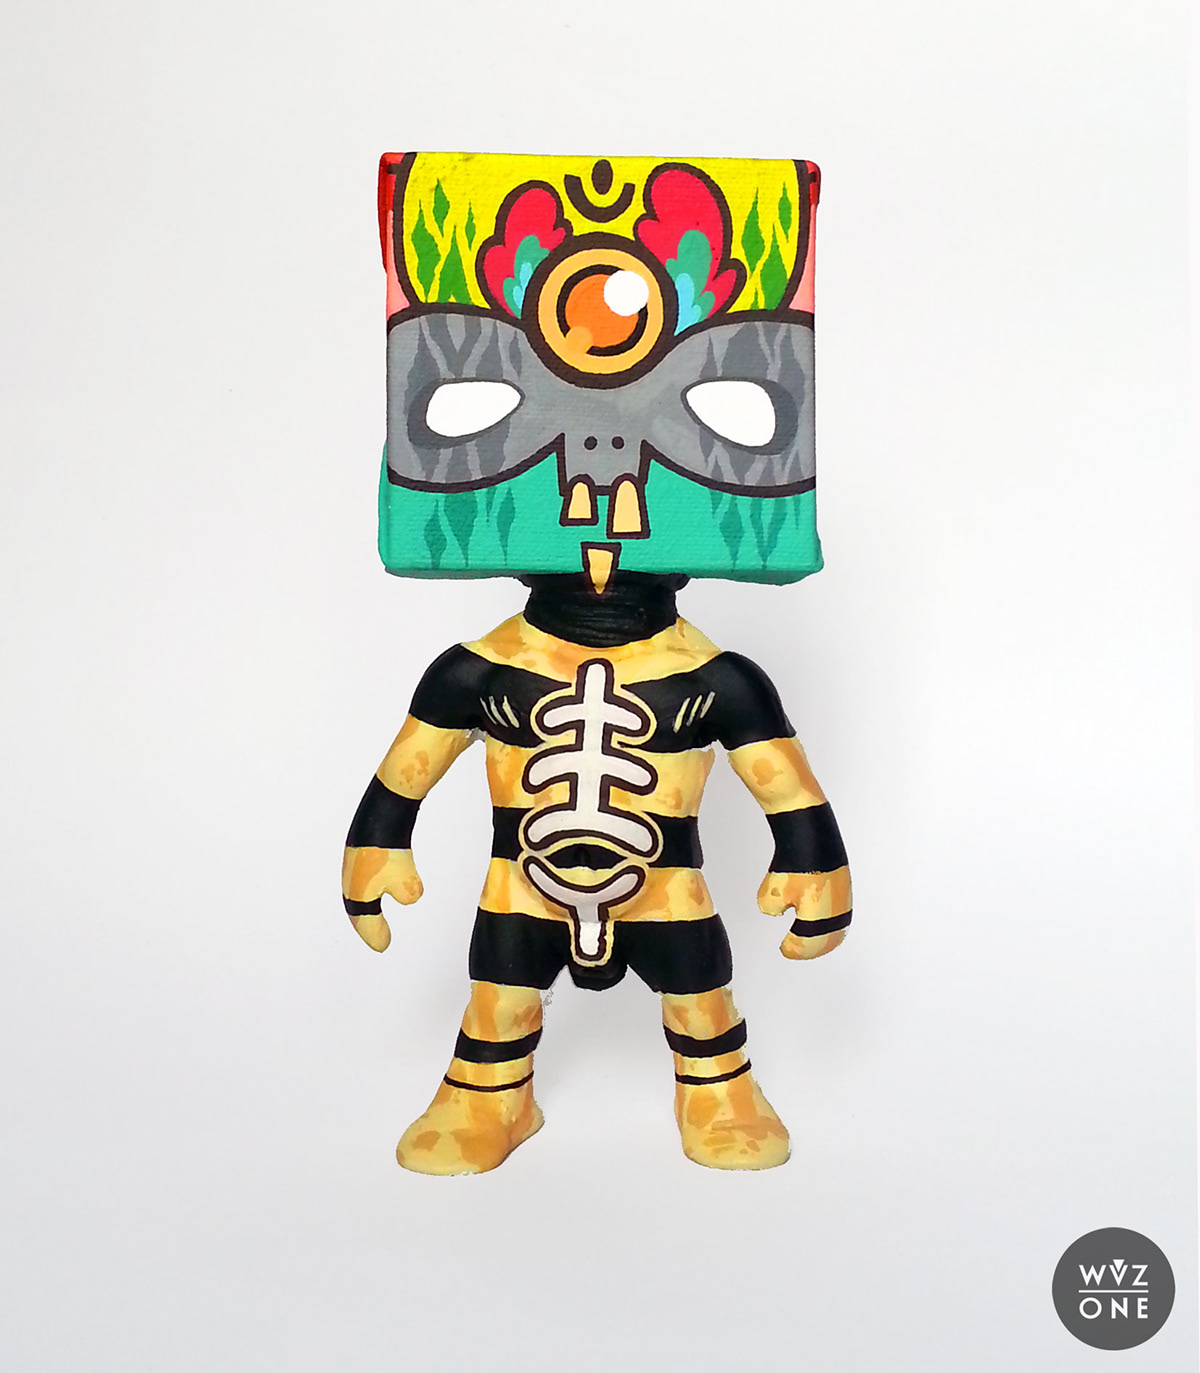 Wuzone Custom DIY vinyltoy artoy toy geek Kidrobot Dunny Munny medicom vinyl collectible acrylics colors